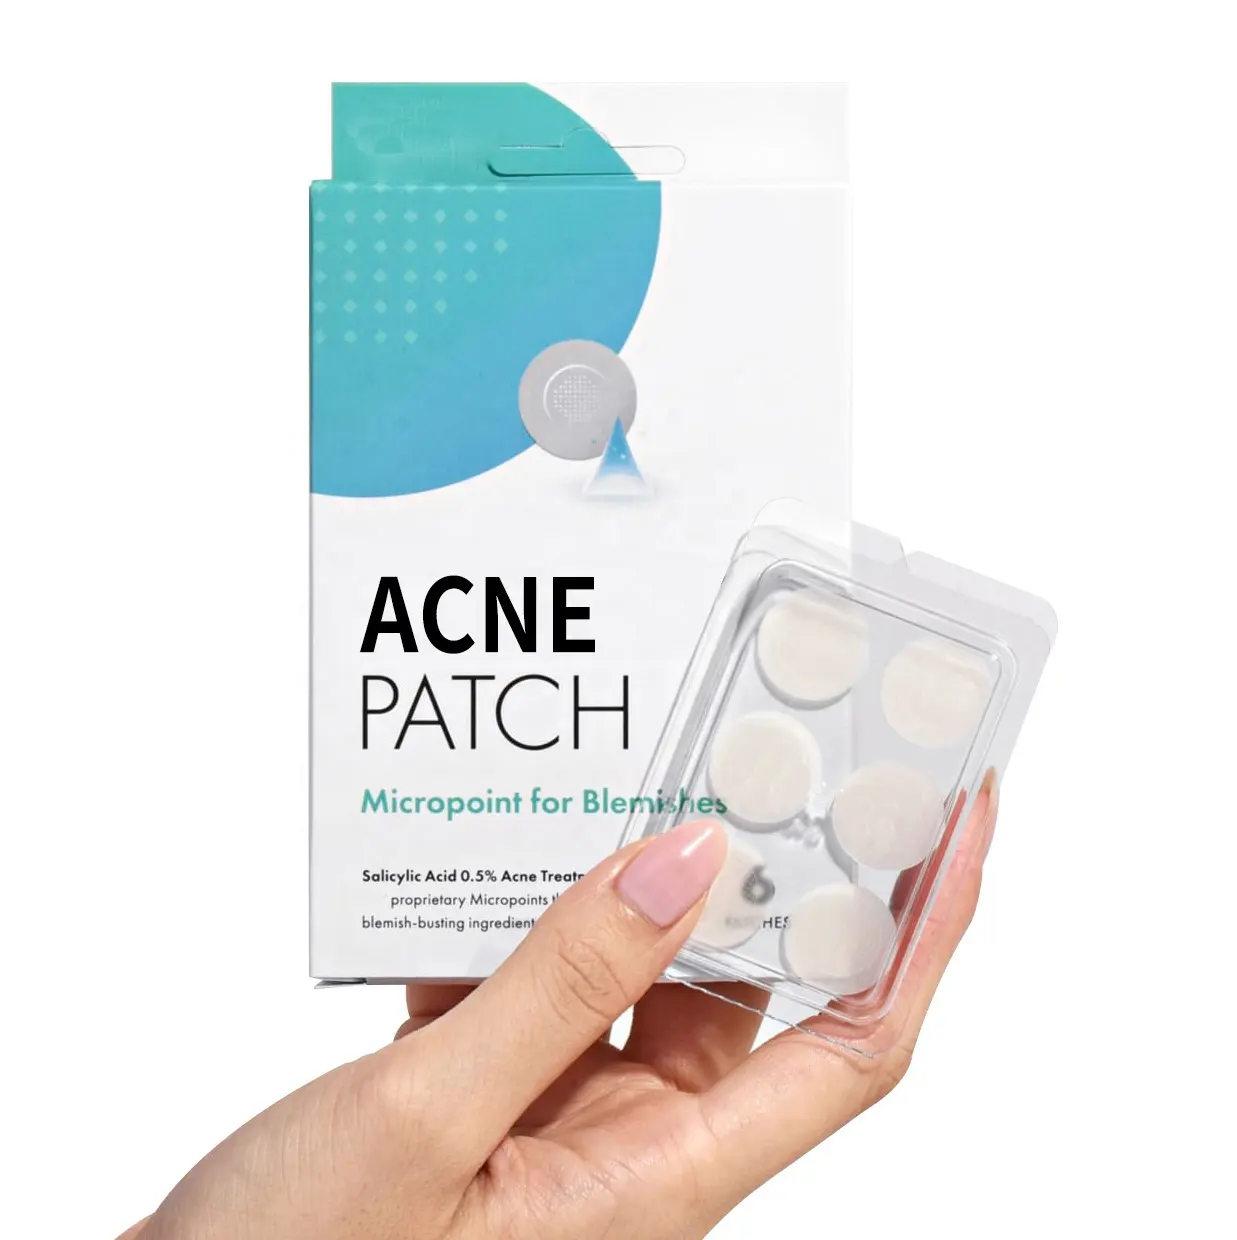 Hautun reinheiten Behandlung Leistungs starke Inhaltsstoffe in Ihrem Deep Micro dart Akne Pickel Patch